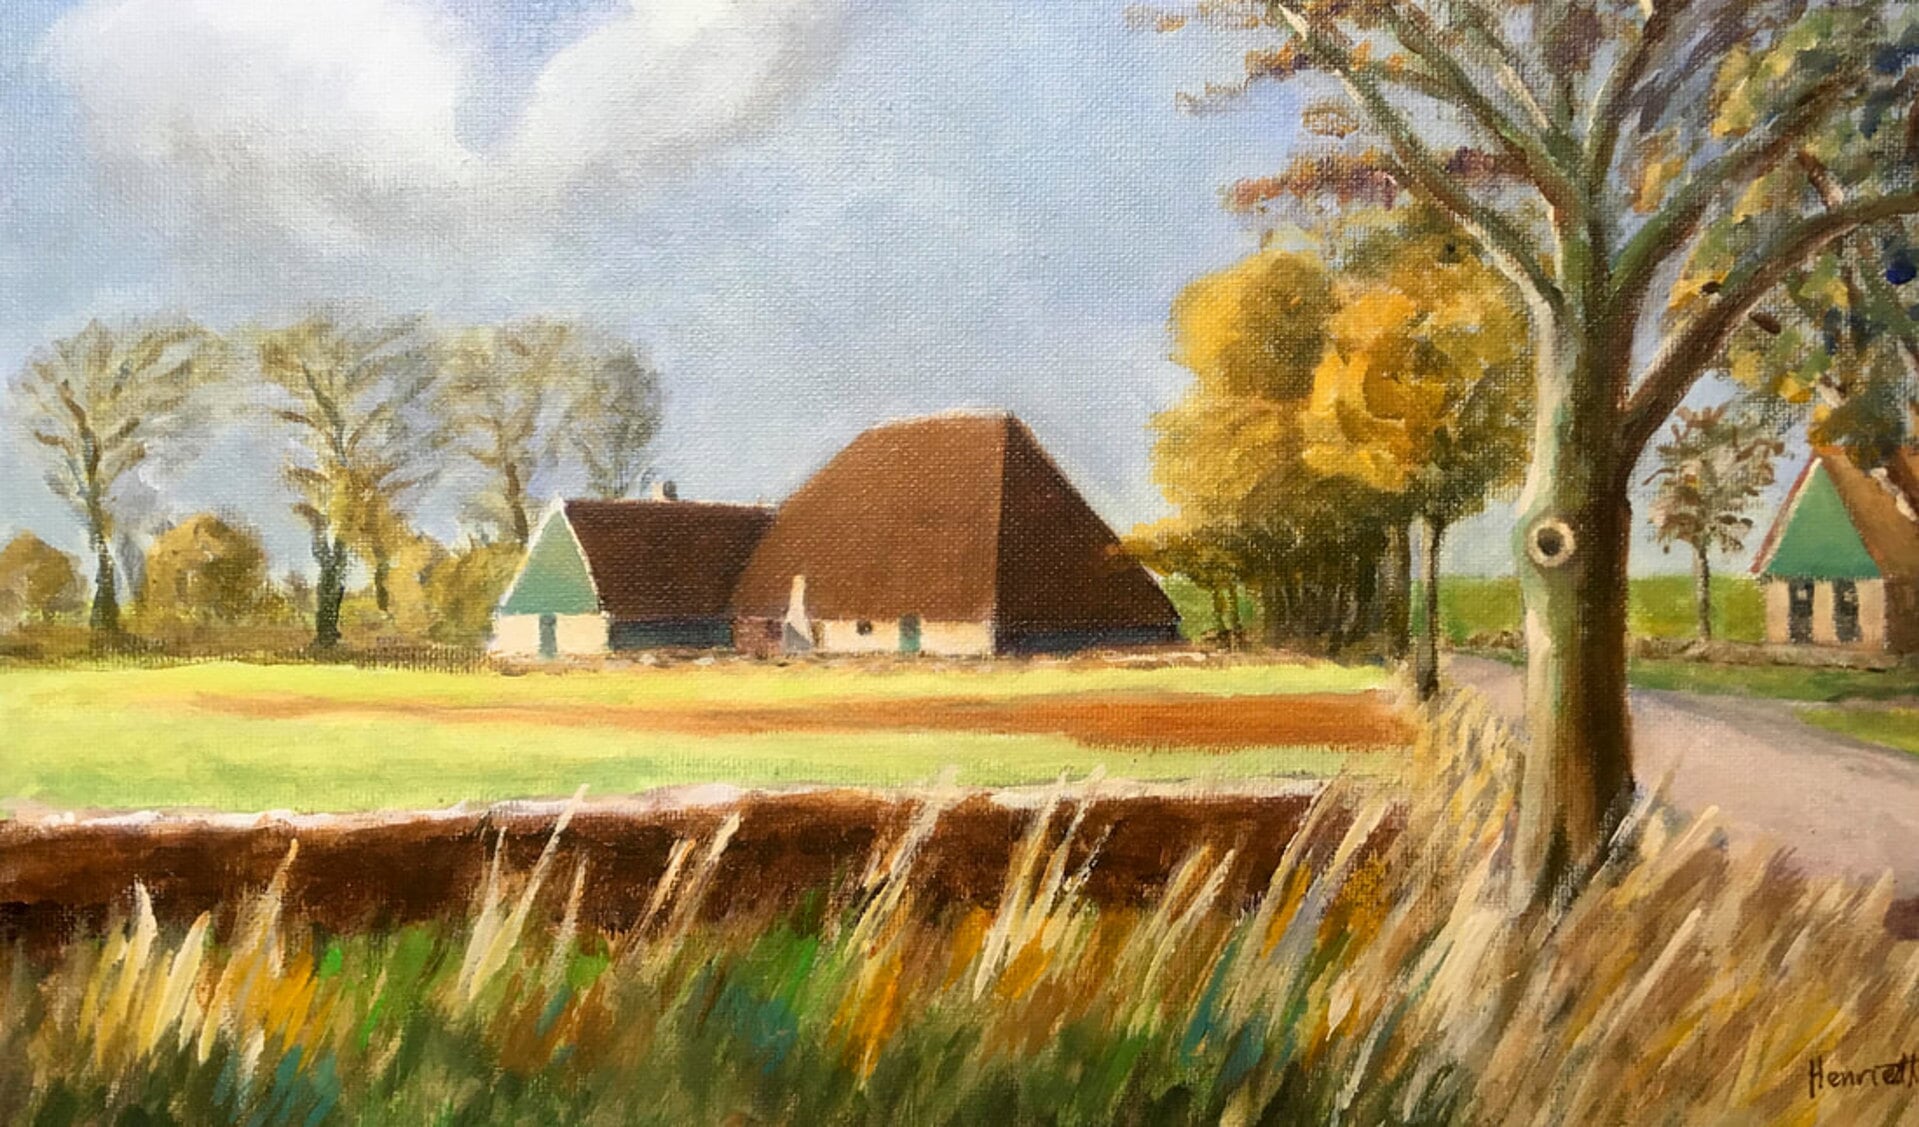 Museumboerderij Jan Lont, geschilderd door Henriëtte Westrik. (Foto: aangeleverd)